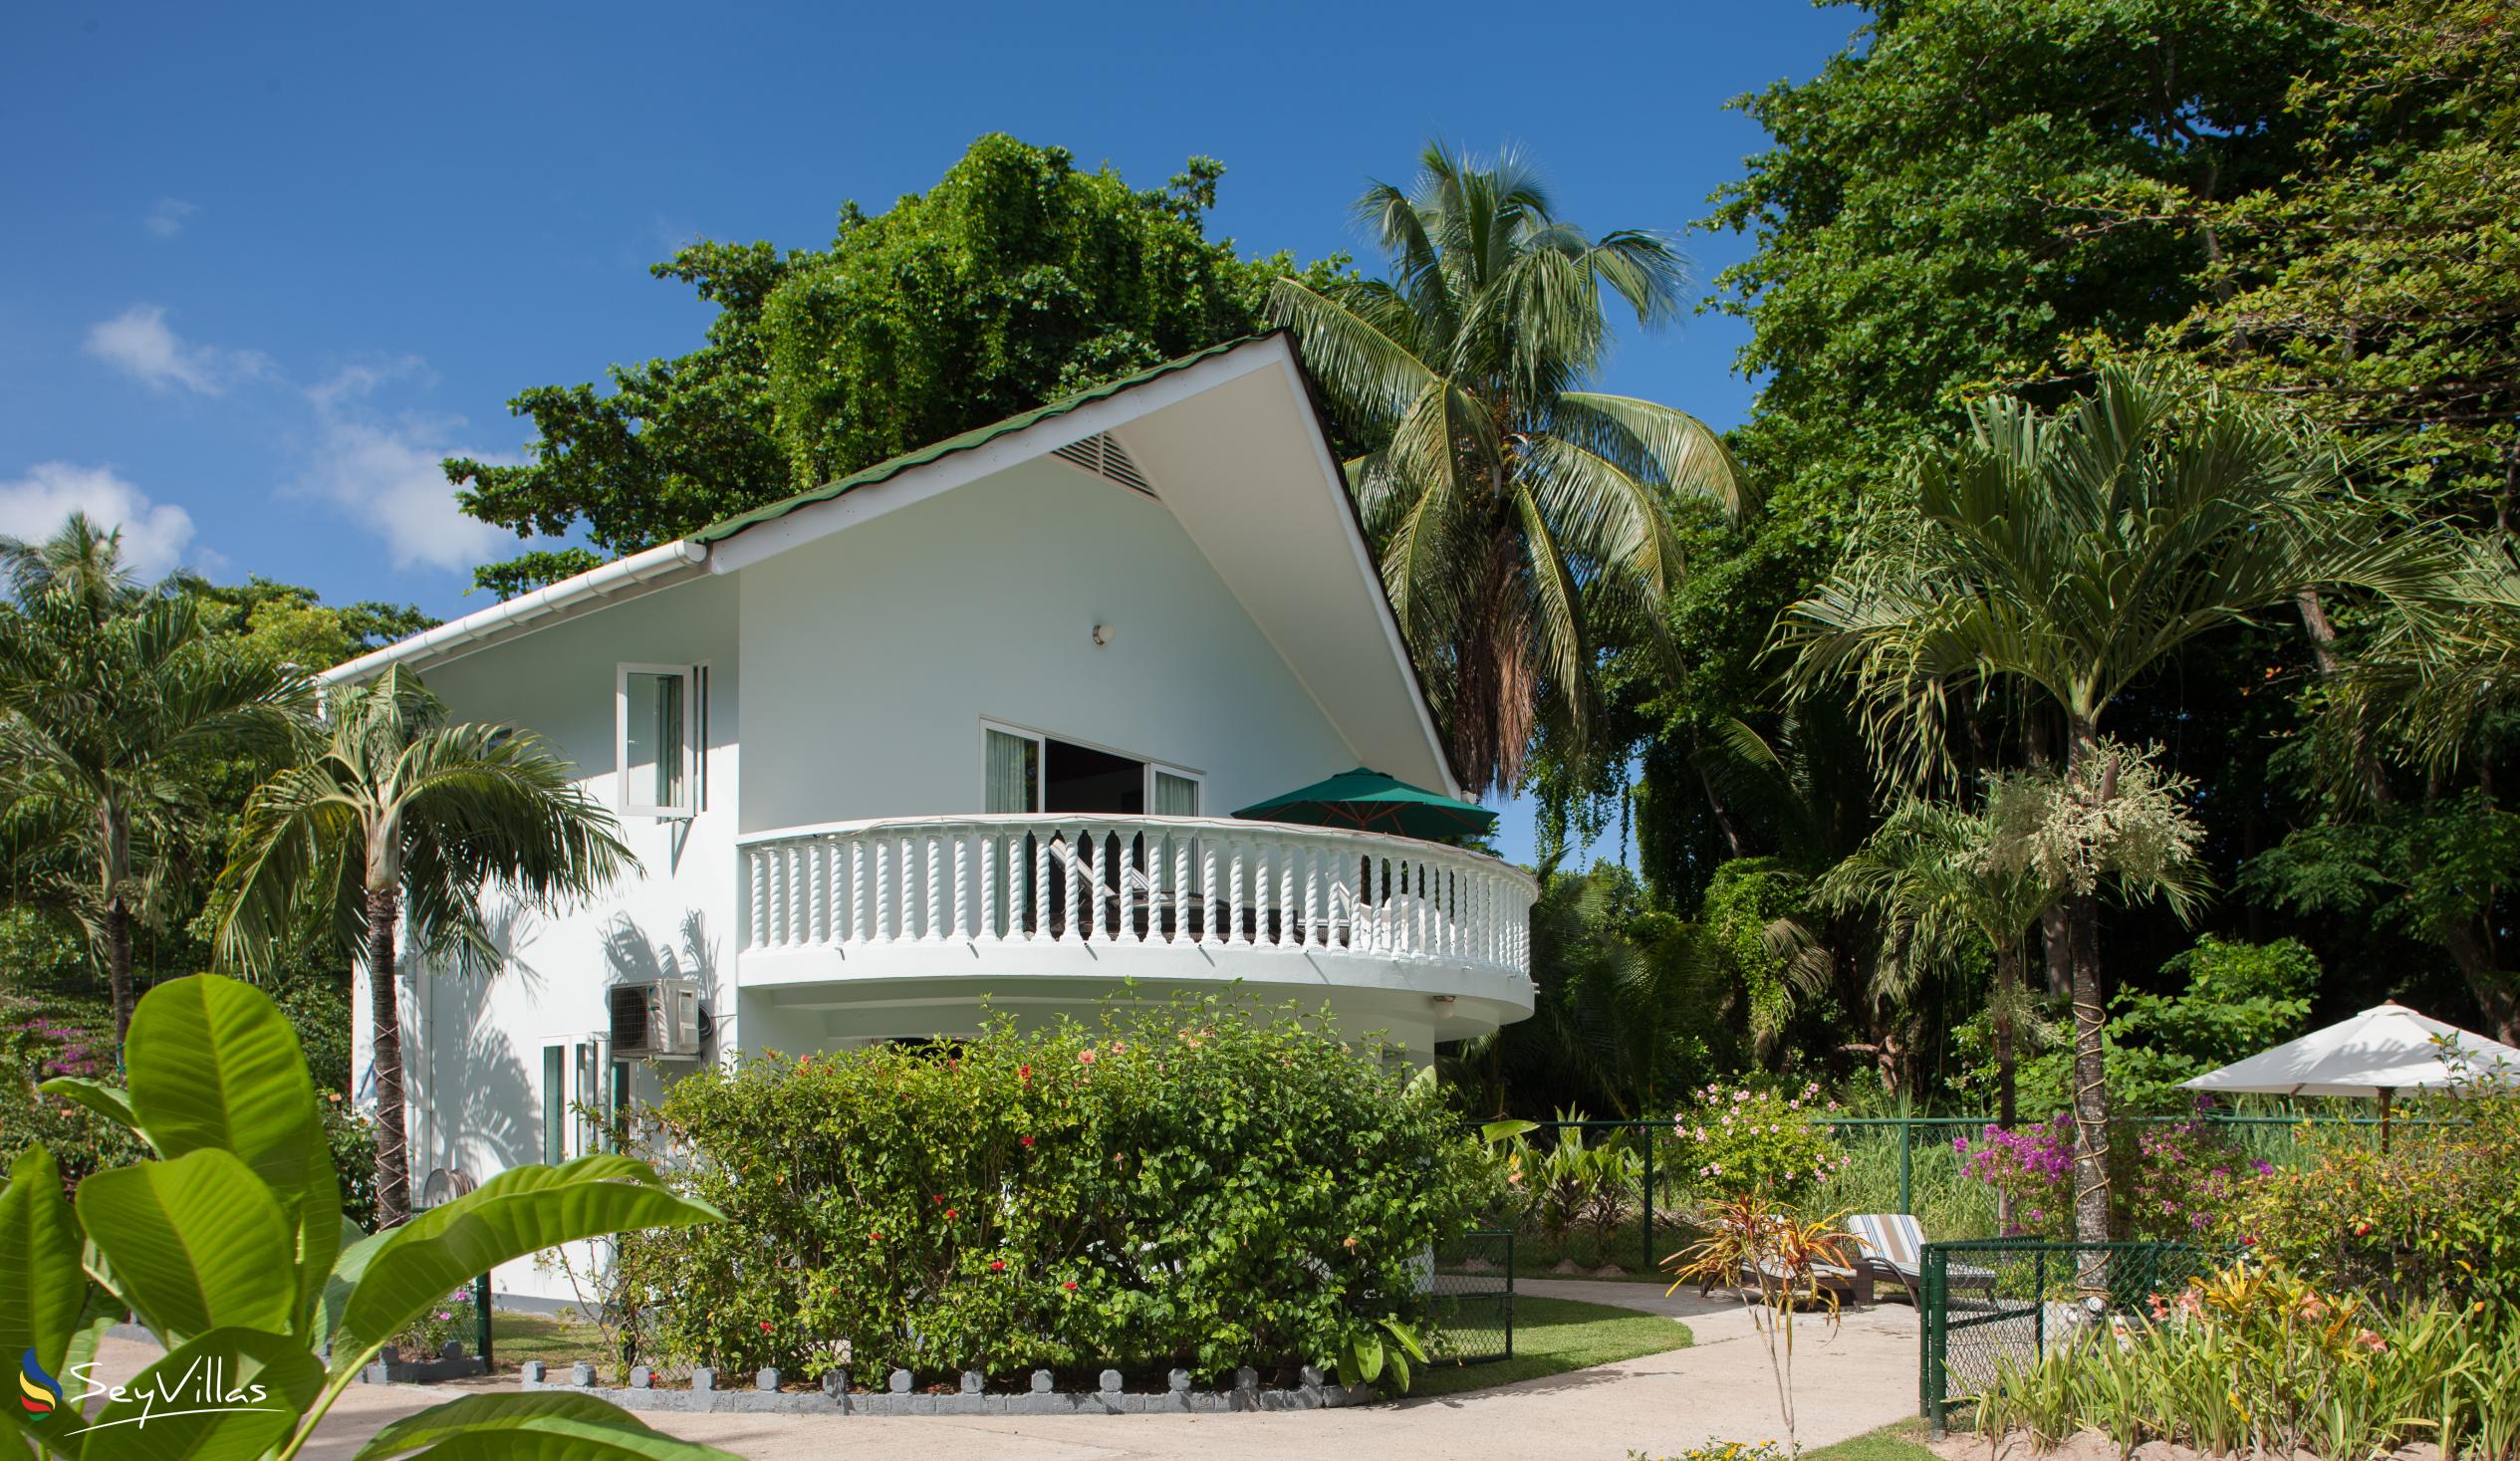 Foto 6: Ocean Villa - Aussenbereich - Praslin (Seychellen)